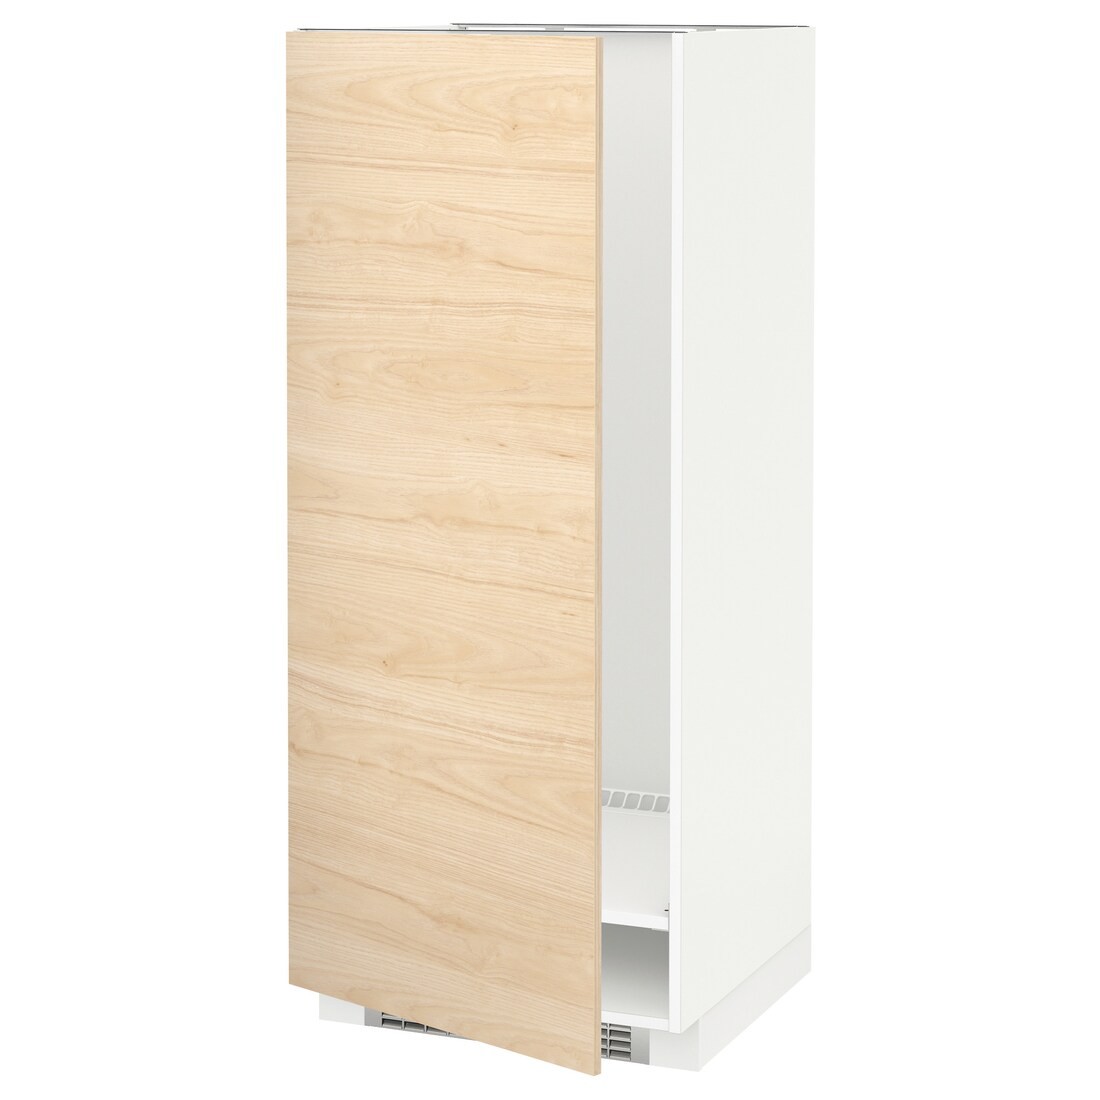 IKEA METOD МЕТОД Высокий шкаф для холодильника / морозильника, белый / Askersund узор светлый ясень, 60x60x140 см 39215815 392.158.15